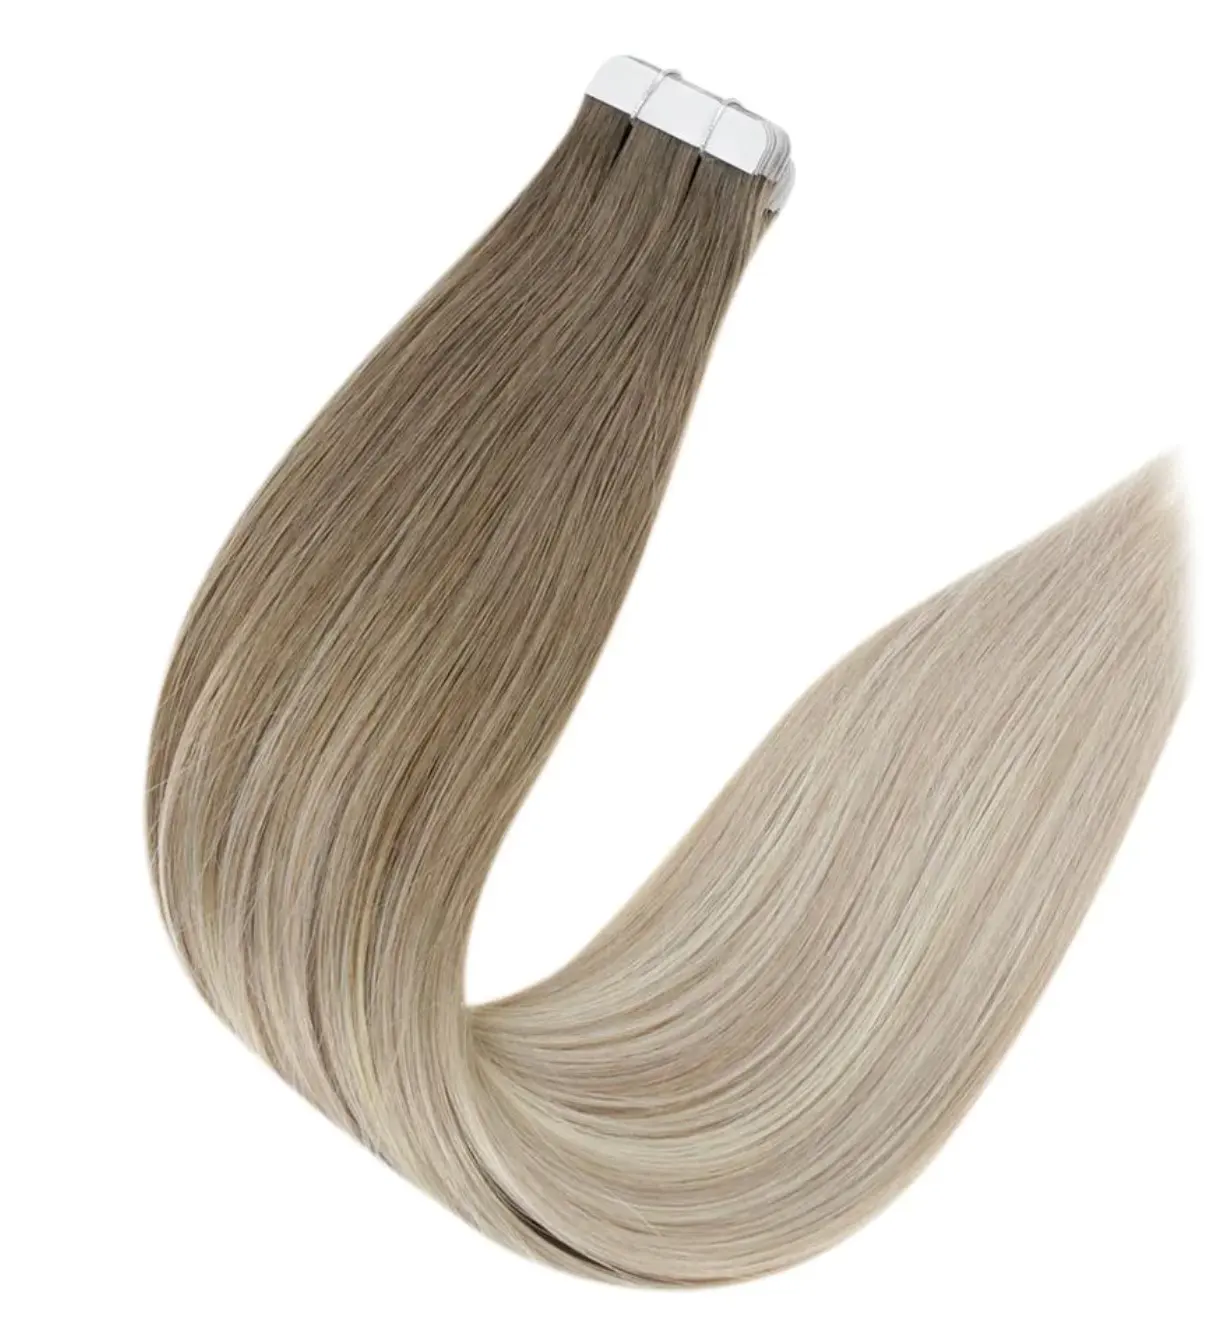 Betere Kwaliteit Human Hair Extensions Tape Haarband In Hair Extensions 100% Human Voor Vrouwen